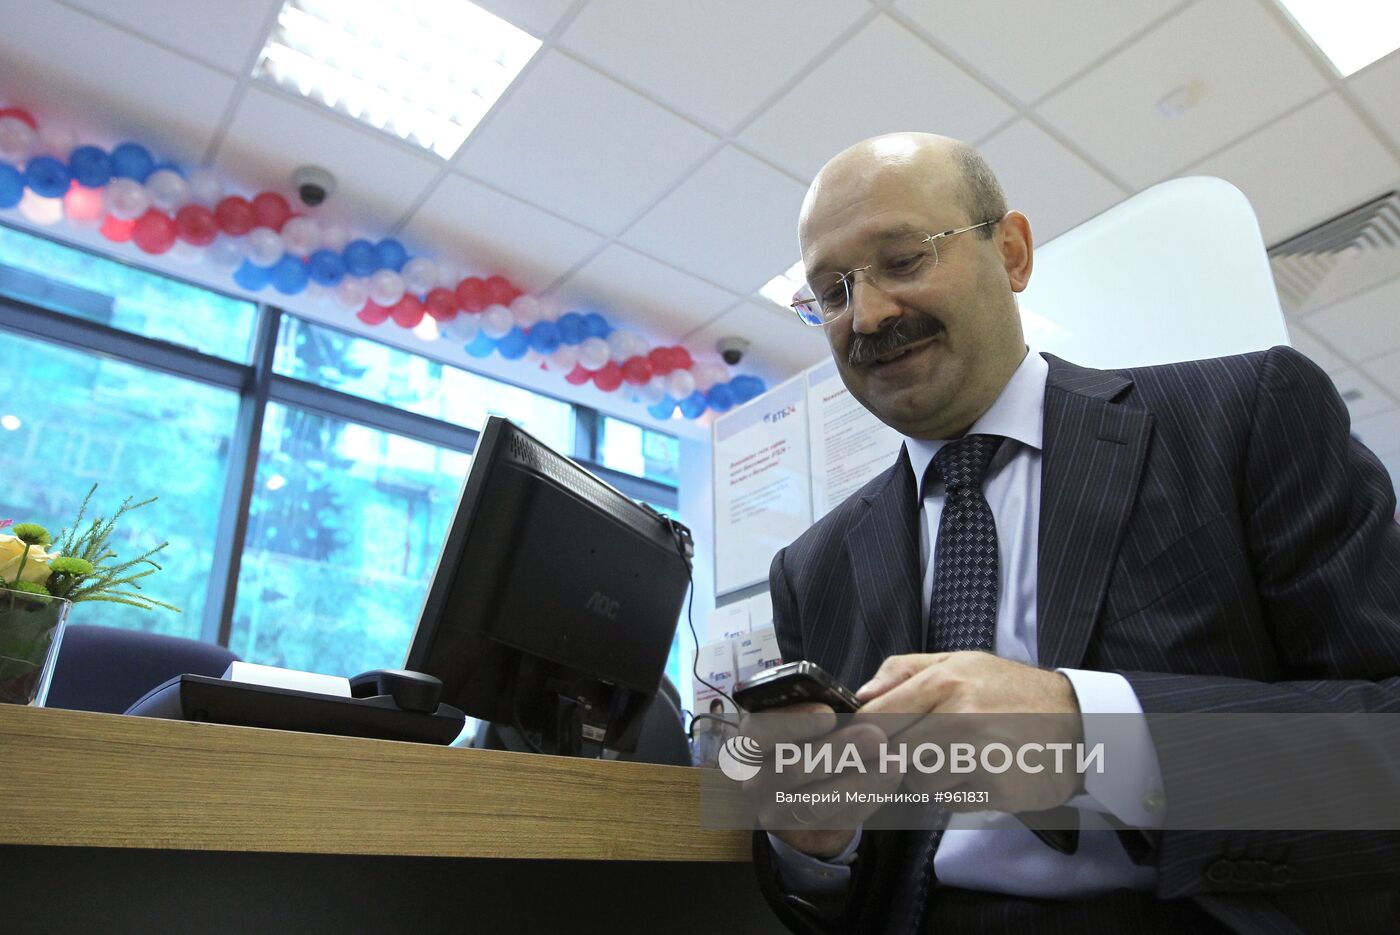 Новый ипотечный центр банка ВТБ24 открылся в Москве